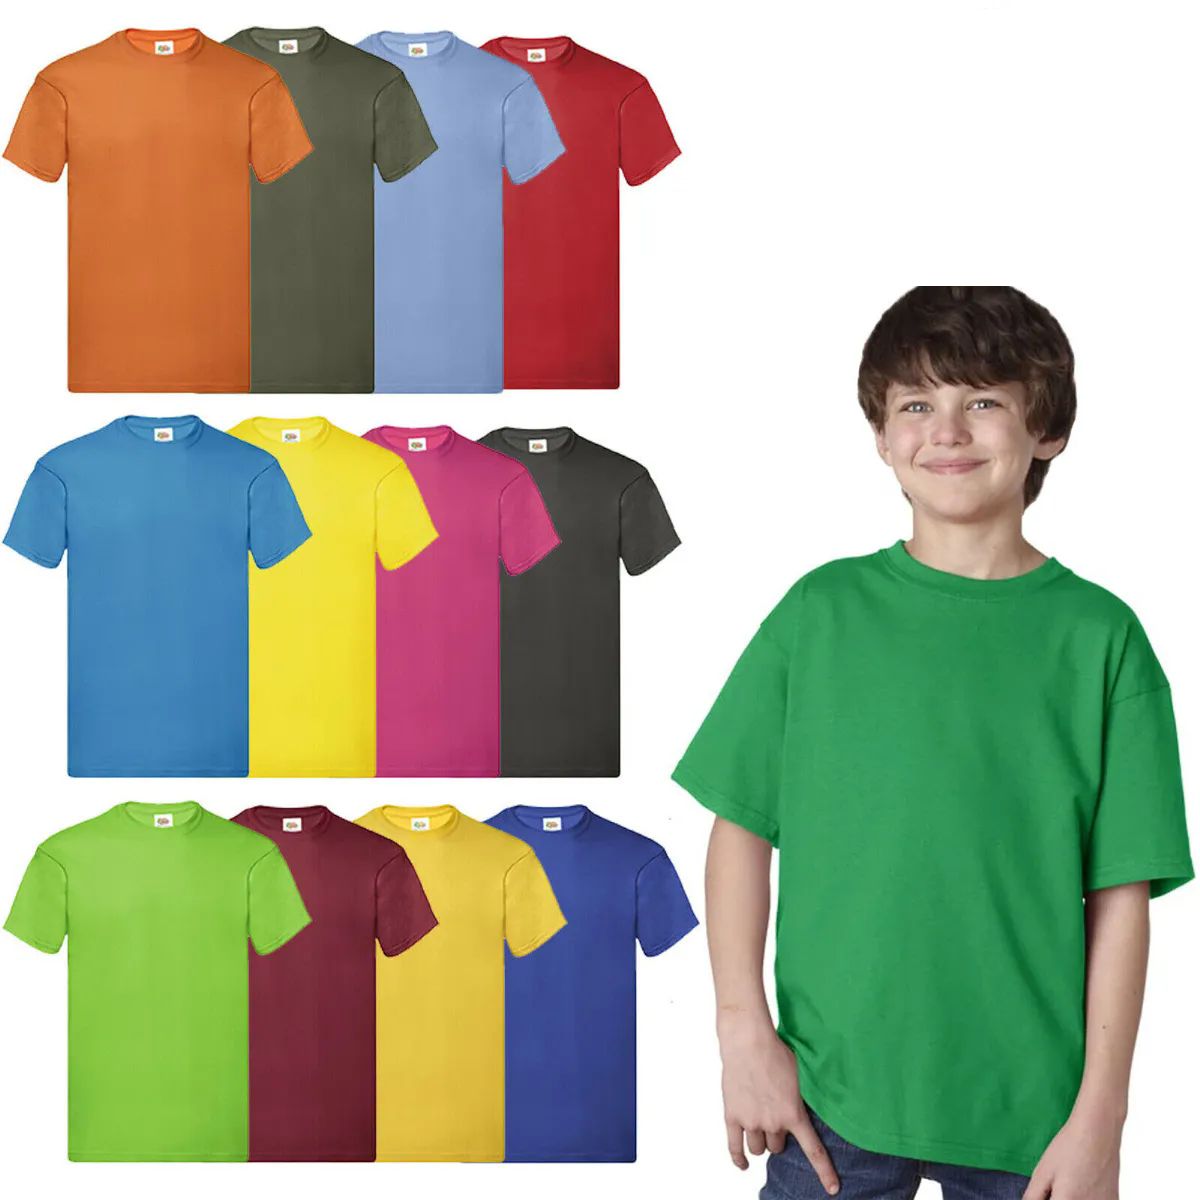 144 Bulk Billion Hats Kids Youth Cotton Assorted Colors T Shirts Size L